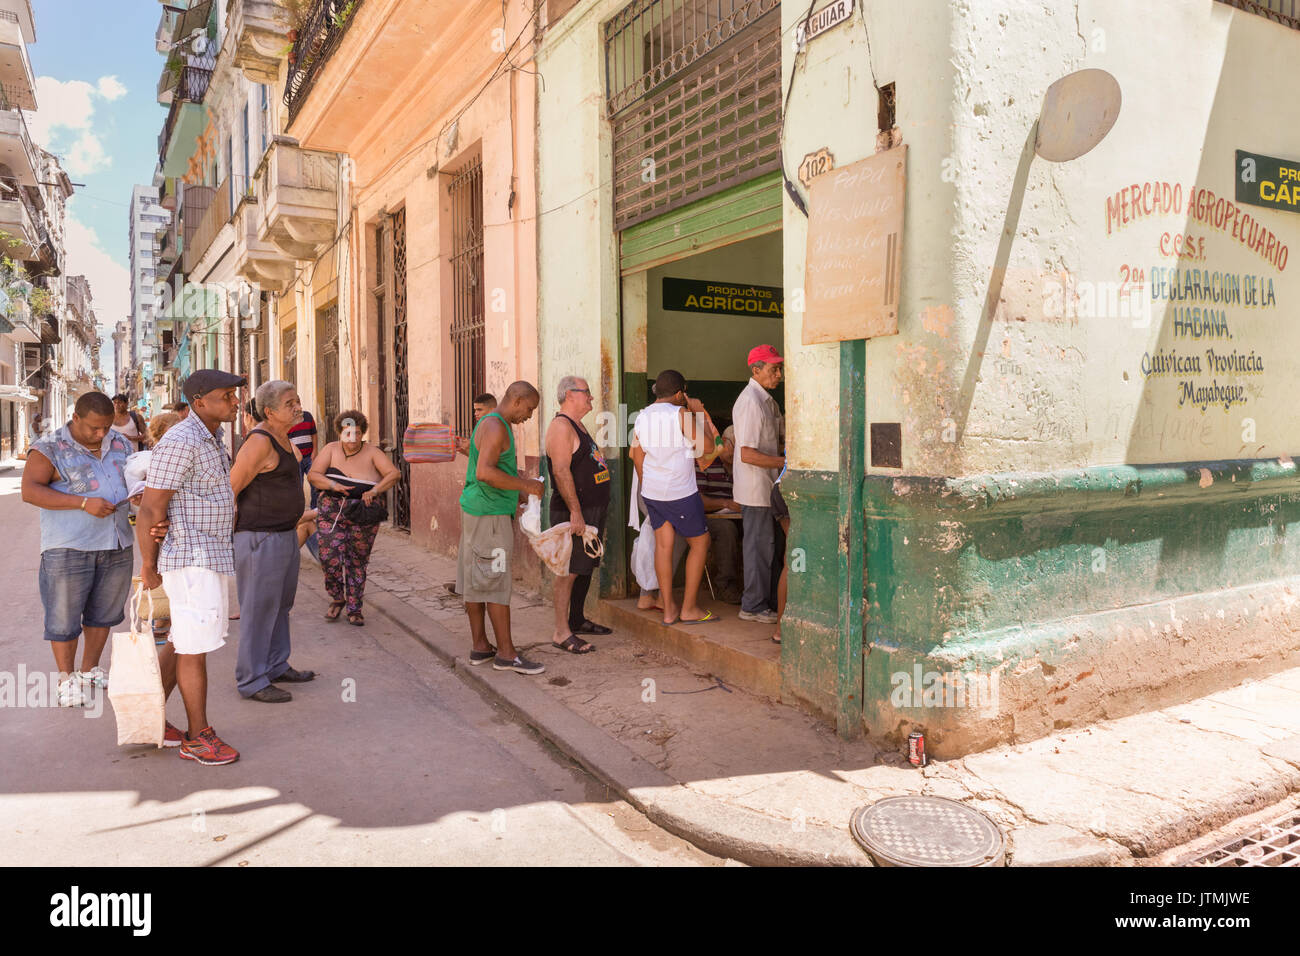 Menschen in der Schlange bei einem Bauernmarkt und Lebensmittelgeschäft, Mercado Agropecuario, Havanna, Kuba Stockfoto